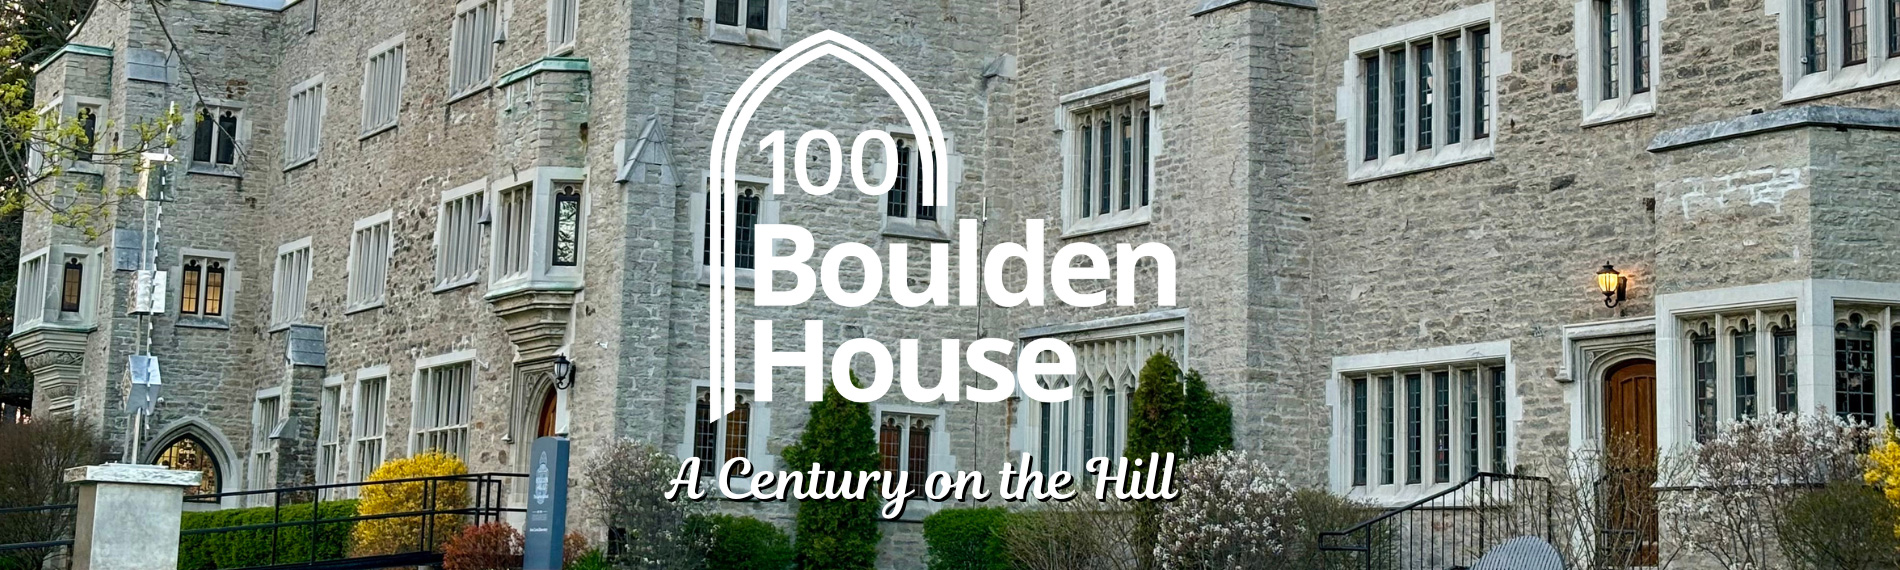 Boulden House Centennial 